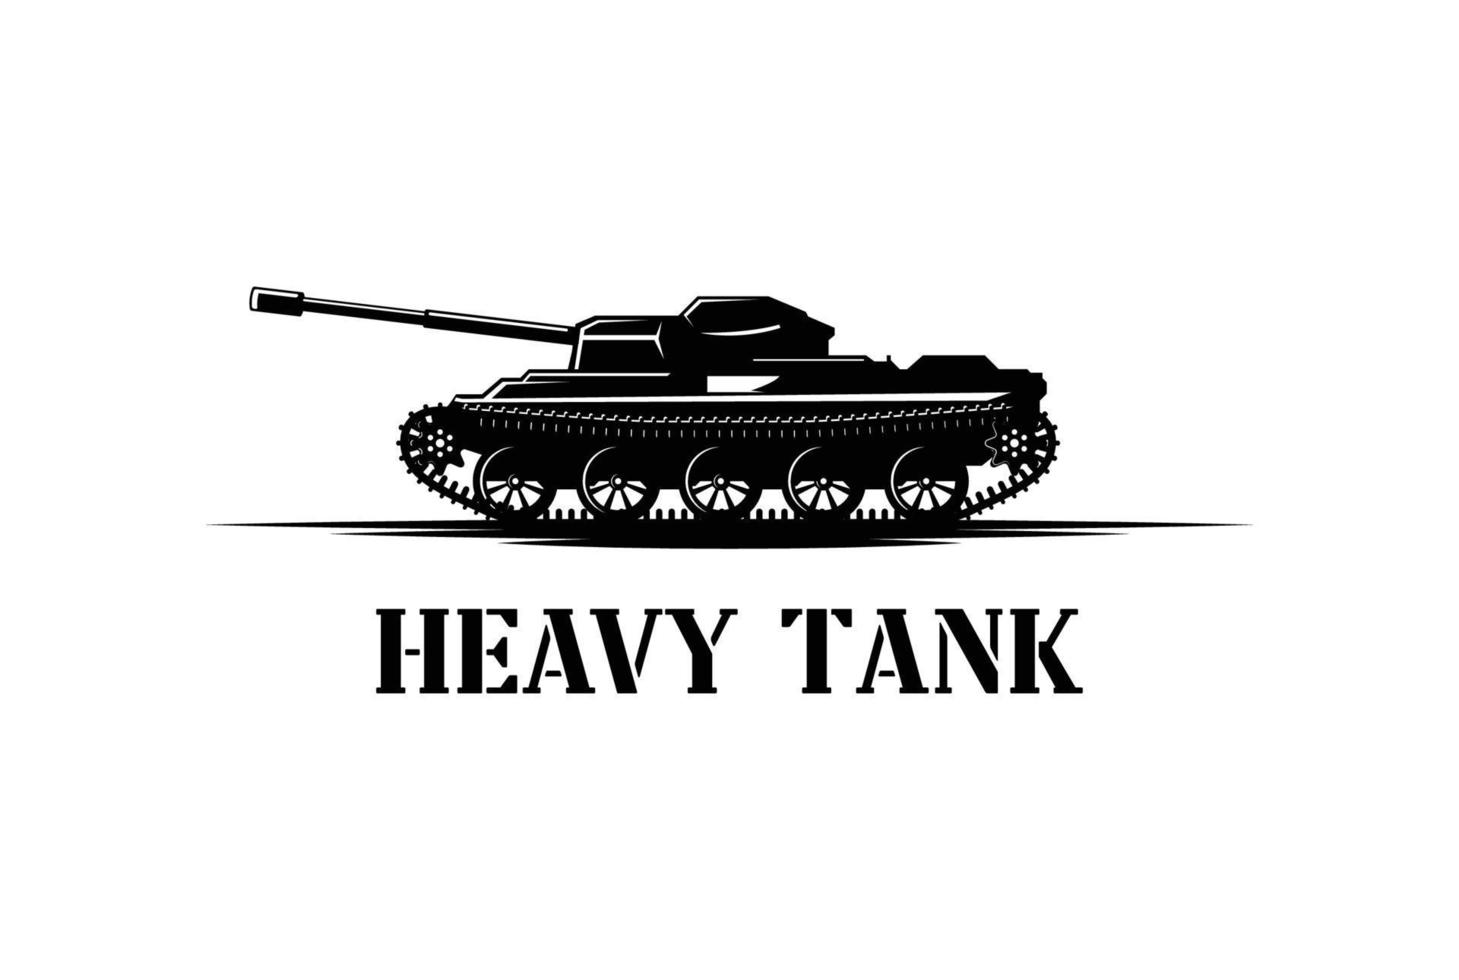 coche de tanque pesado retro vintage para arma guerra defensa ejército soldado militar transporte logo vector